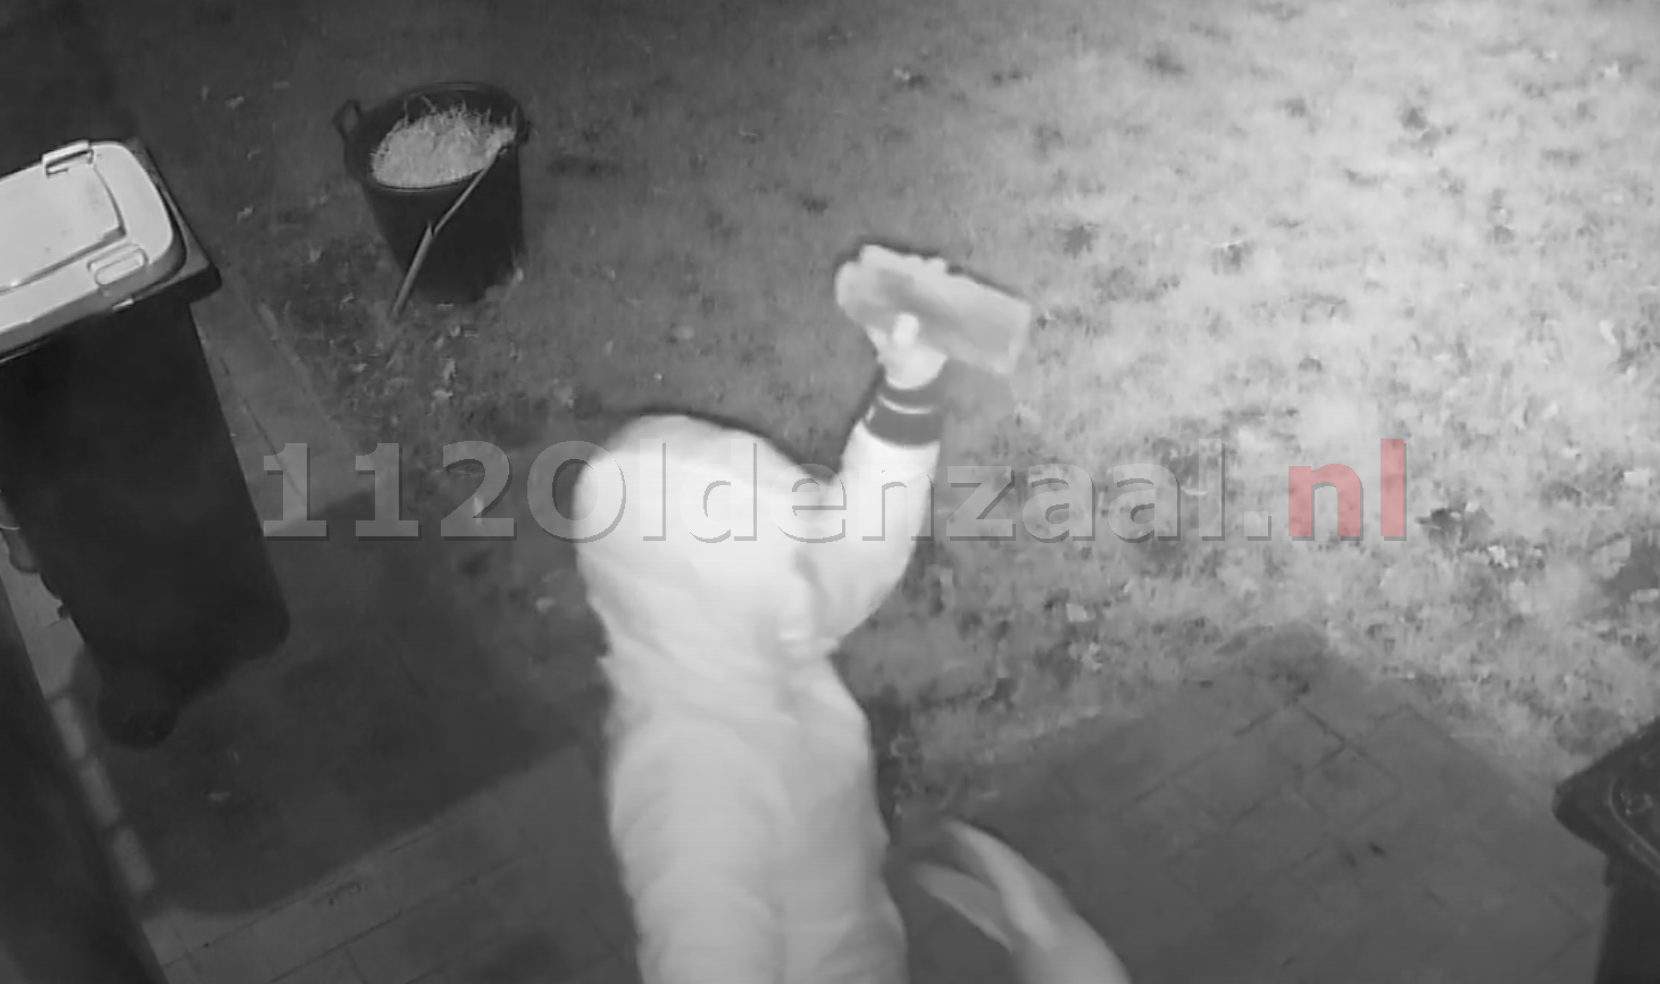 (VIDEO) Twee inbrekers proberen ruiten van huis stuk te gooien in Oldenzaal; politie zoekt getuigen